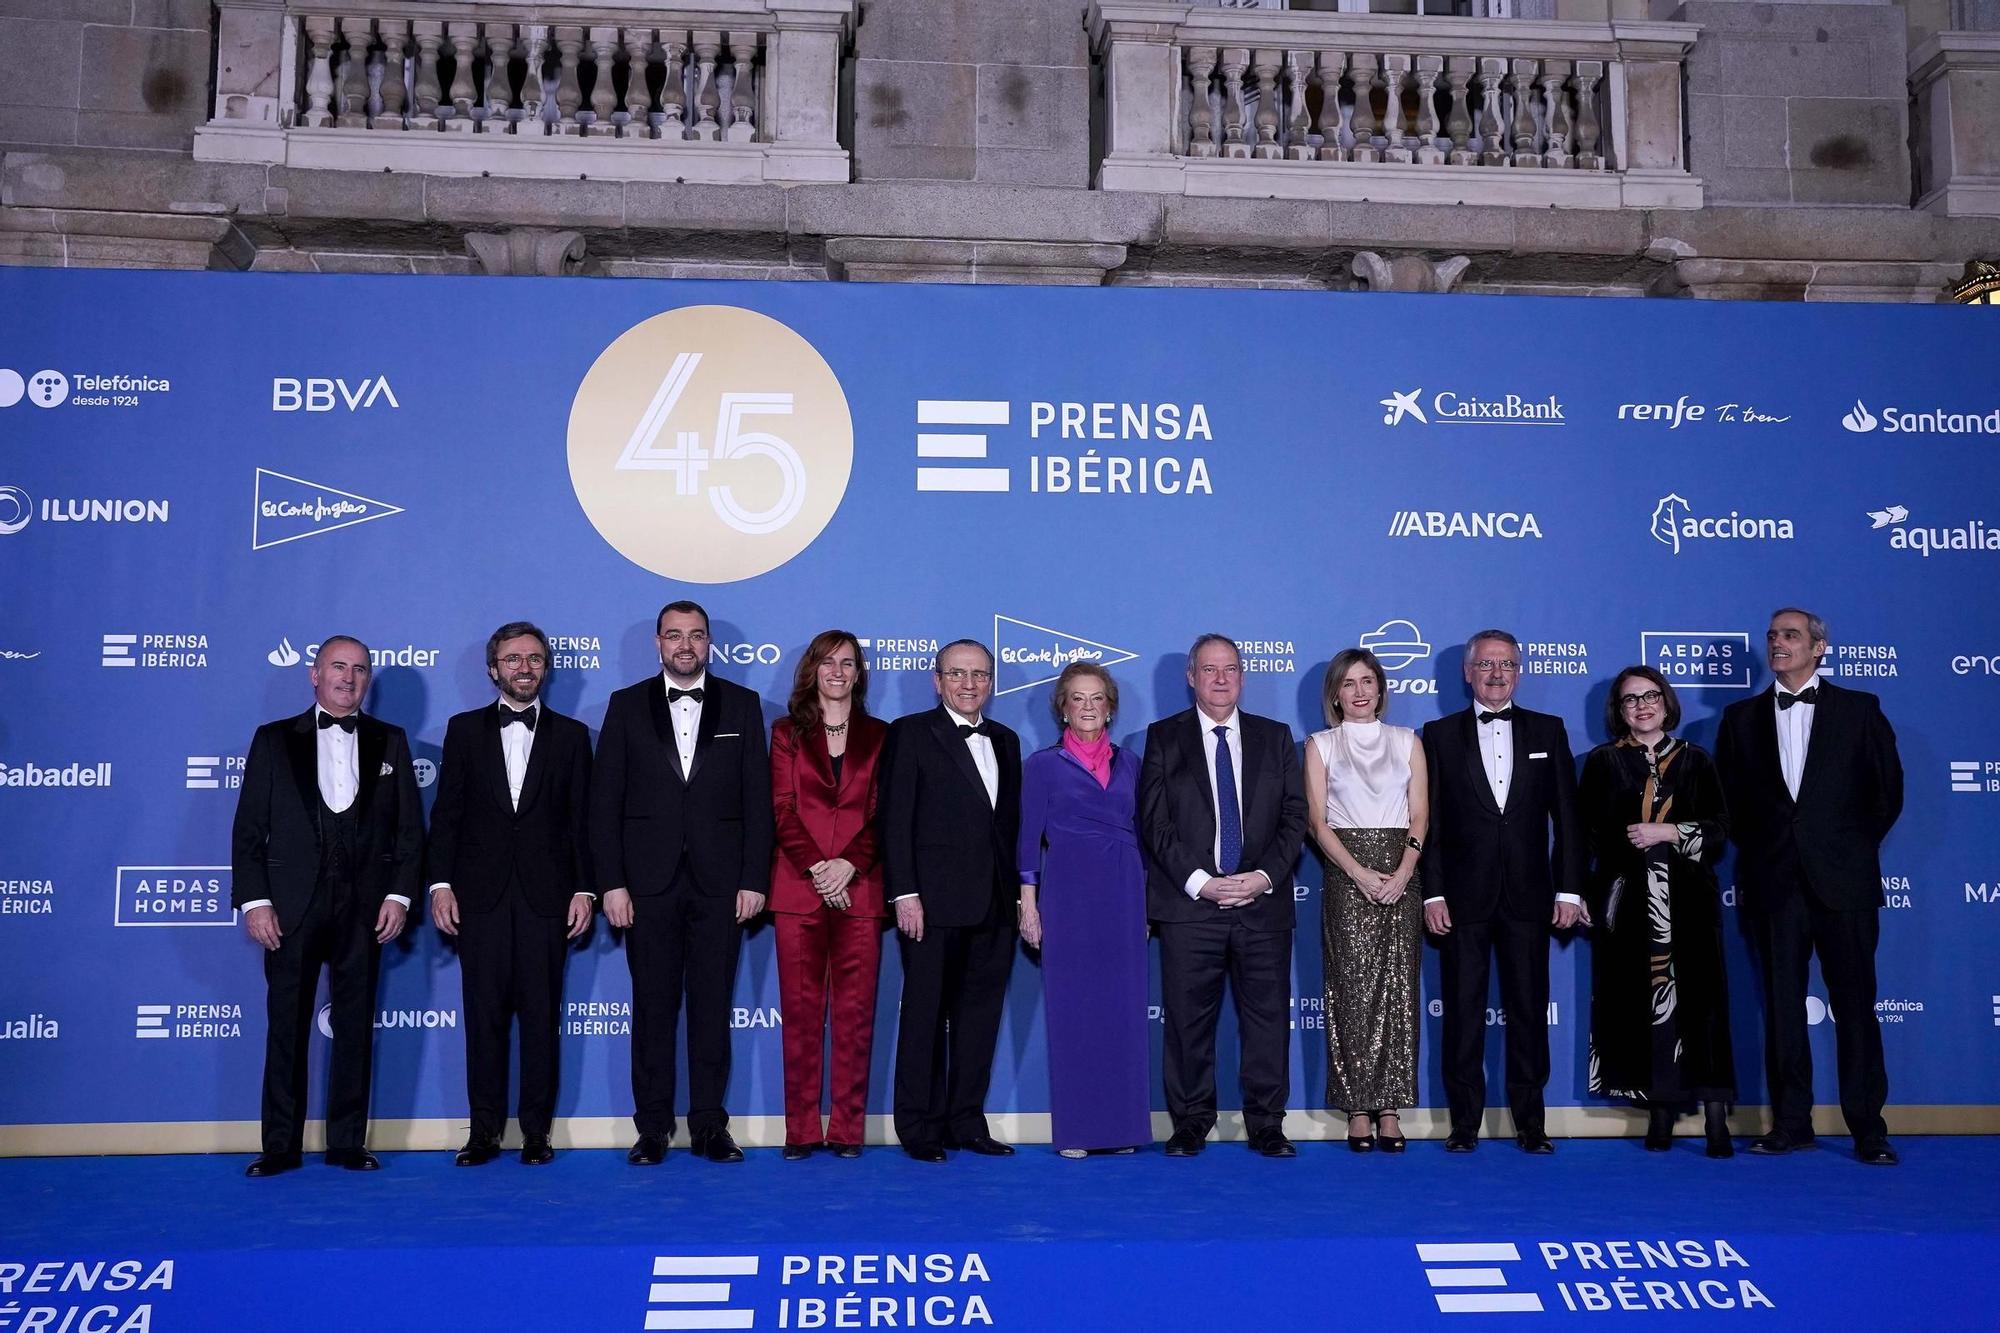 45 aniversario de Prensa Ibérica: destacada presencia asturiana